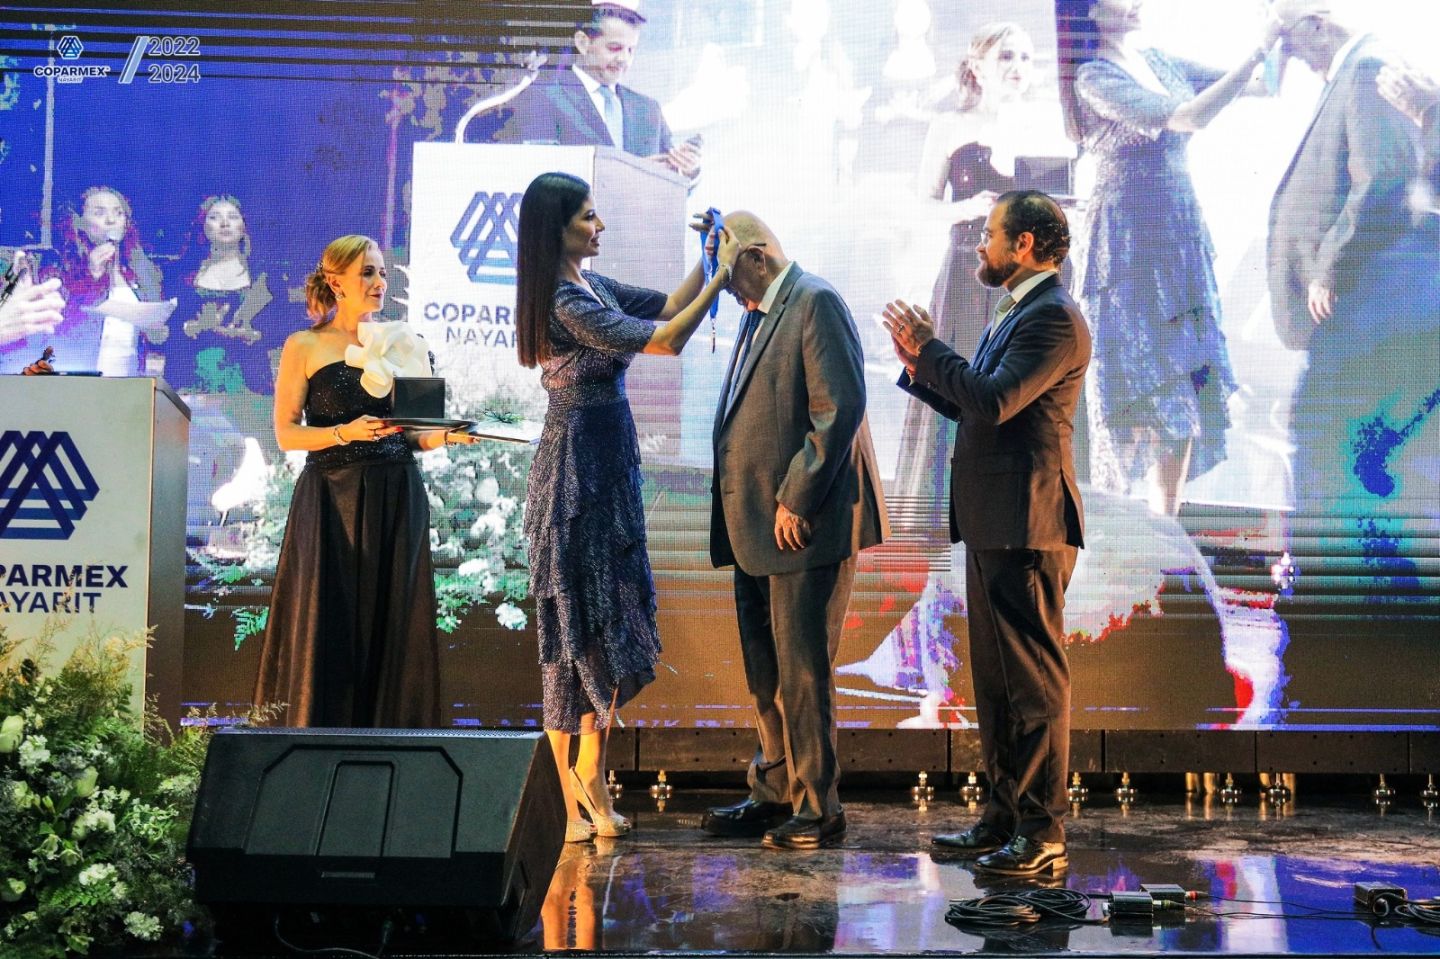 Coparmex Nayarit entrega Medalla al Mérito Empresarial en el marco de su 53 aniversario